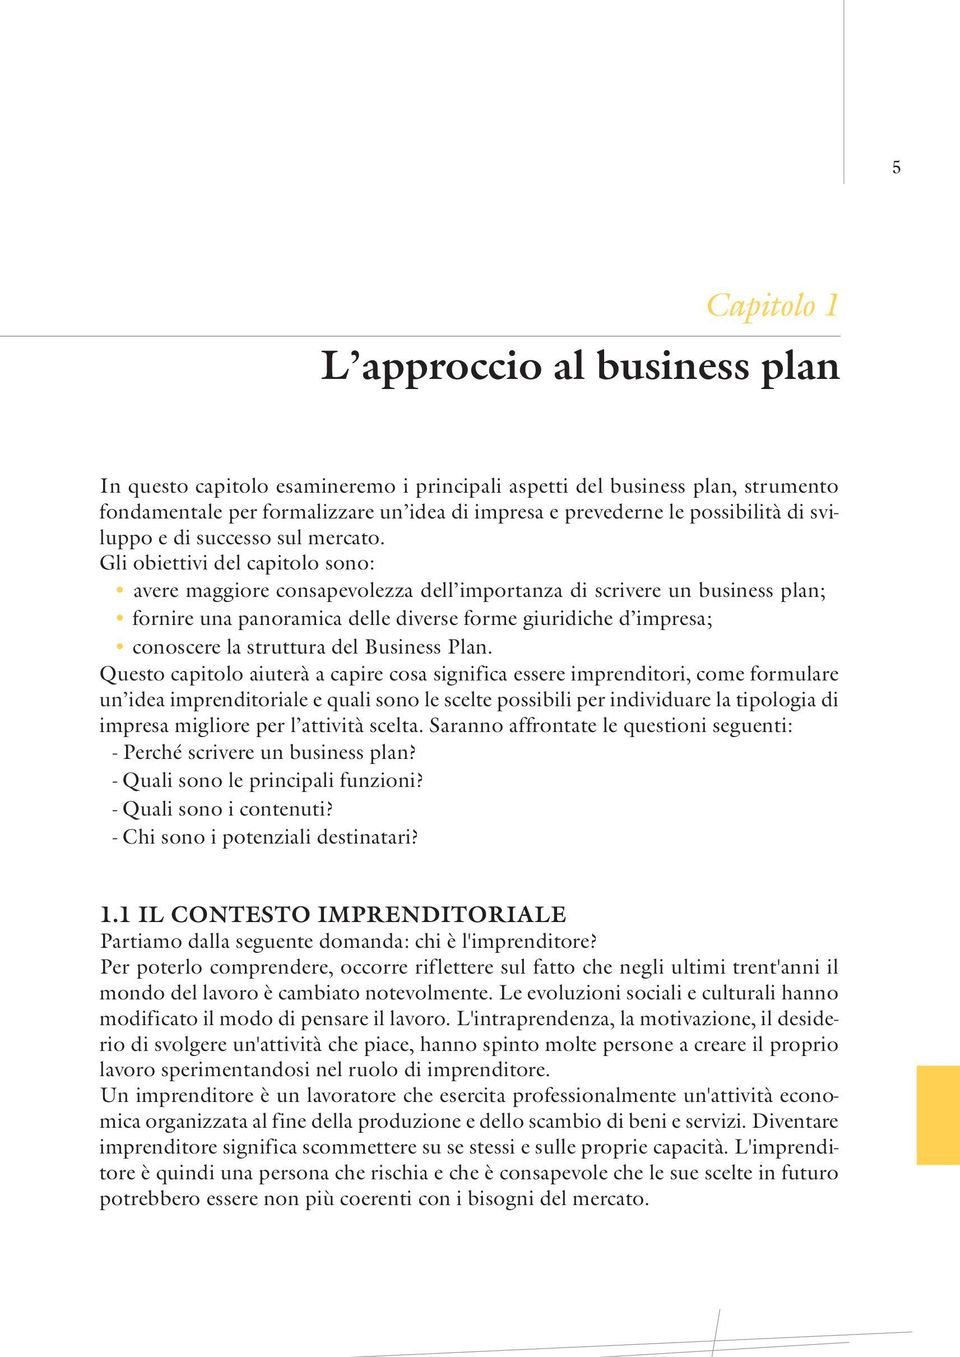 Gli obiettivi del capitolo sono: avere maggiore consapevolezza dell importanza di scrivere un business plan; fornire una panoramica delle diverse forme giuridiche d impresa; conoscere la struttura